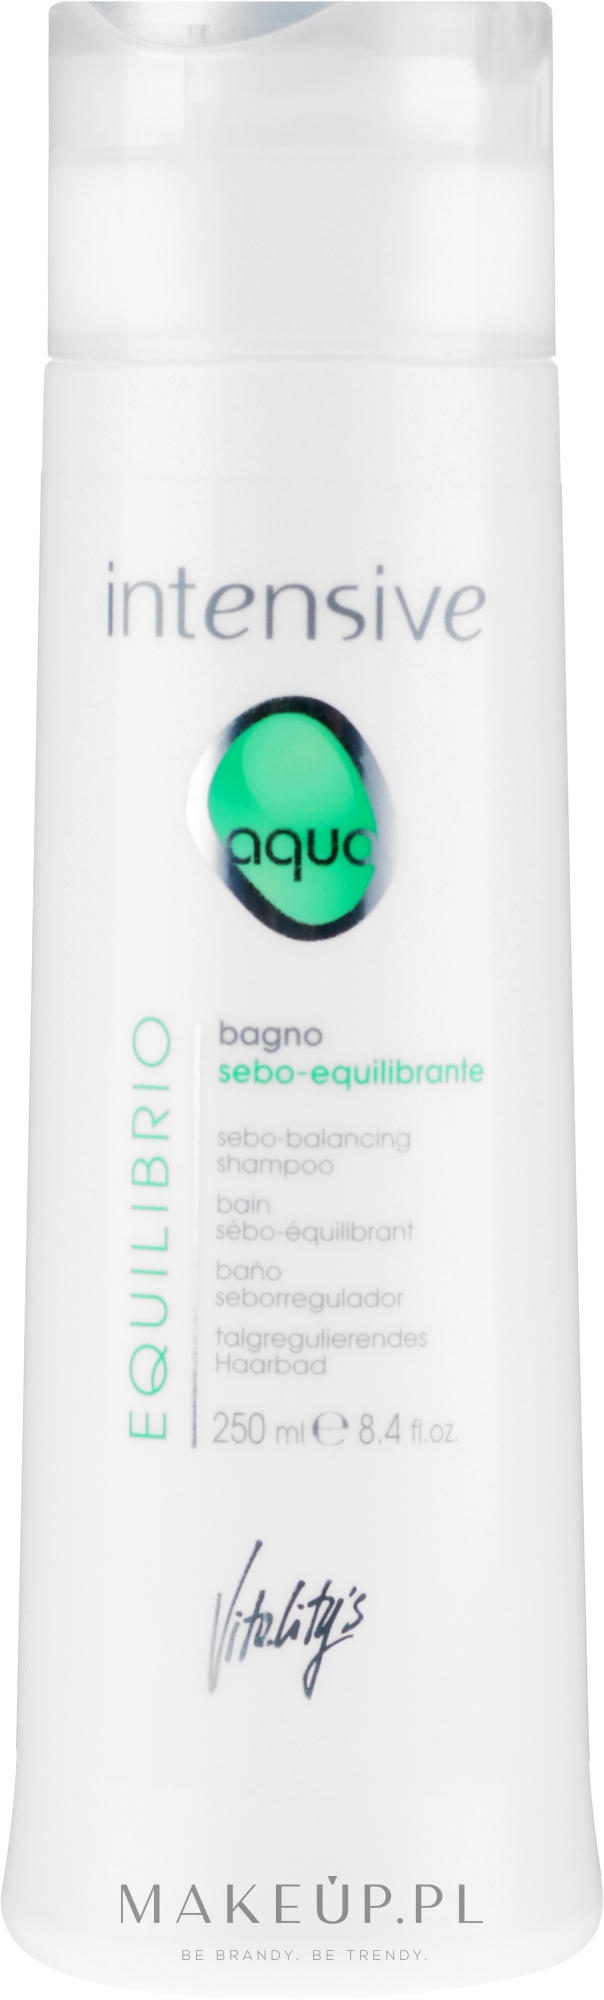 Szampon do włosów - Vitality’s Intensive Aqua Equilibrio Sebo-Balancing Shampoo — Zdjęcie 250 ml